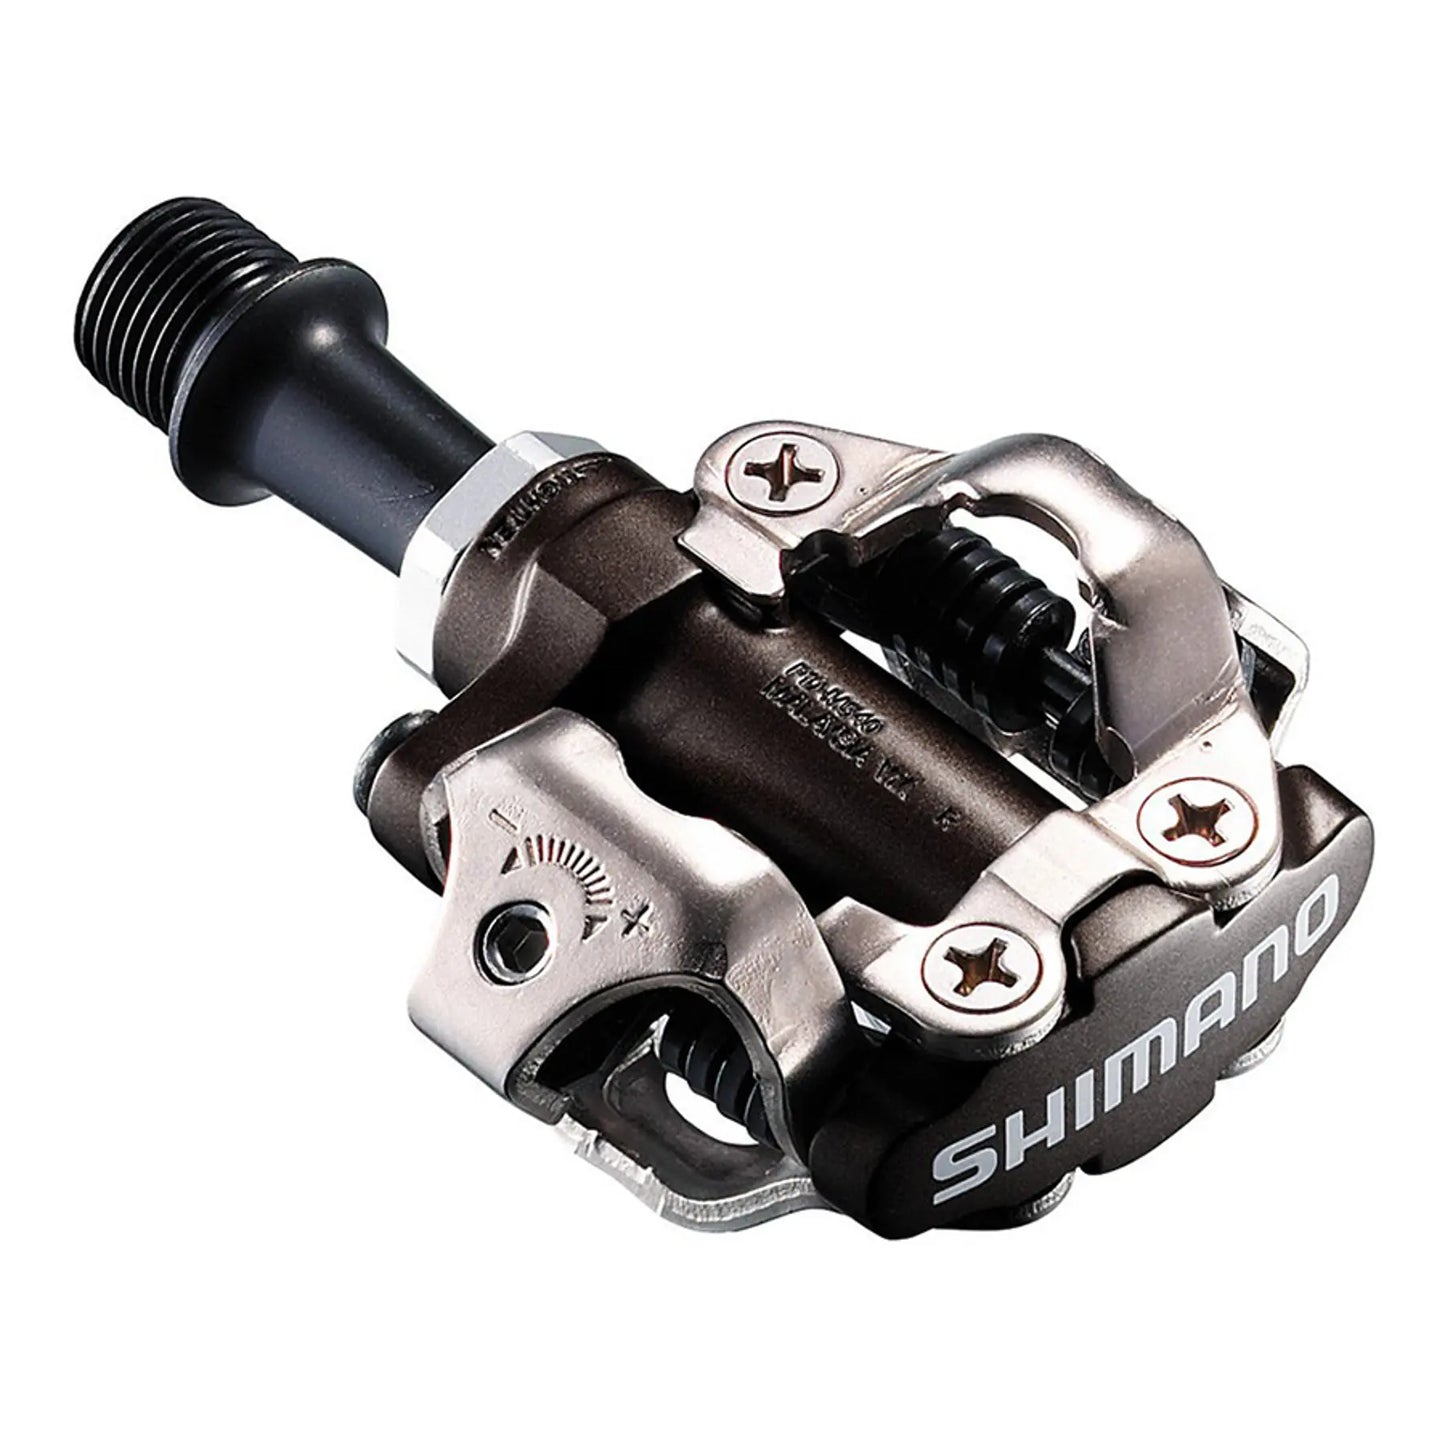 Pedal Shimano M540 Spd Con Calas Sm-Sh51